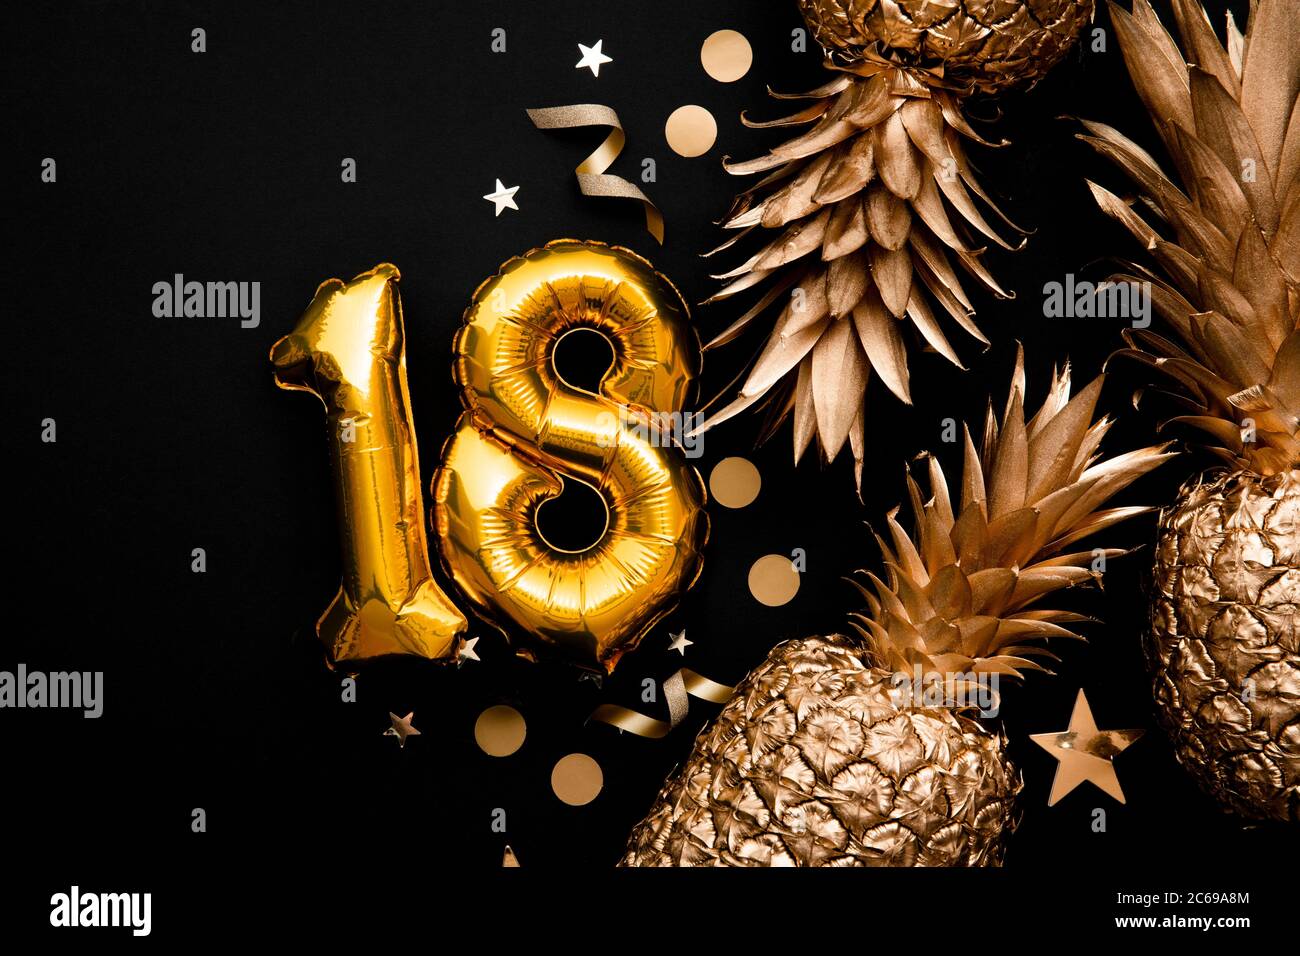 le 18e anniversaire de célébration fond avec des ballons d'or et des ananas dorés Banque D'Images